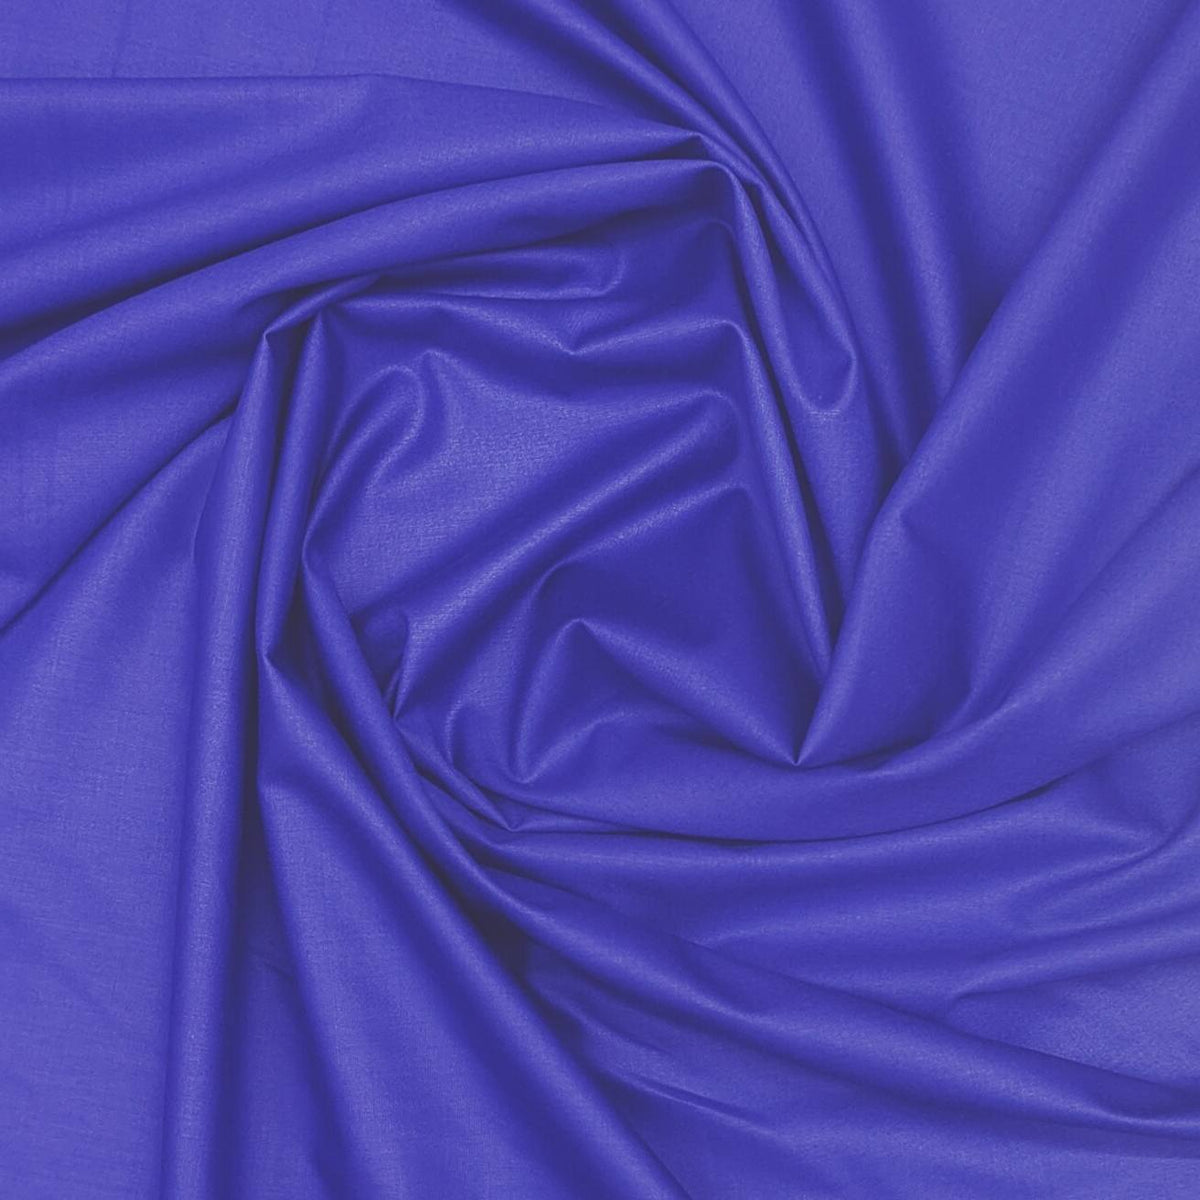 ManTire Special PolyViscose Soft Premium Shirt Fabric Colour Royal Blue